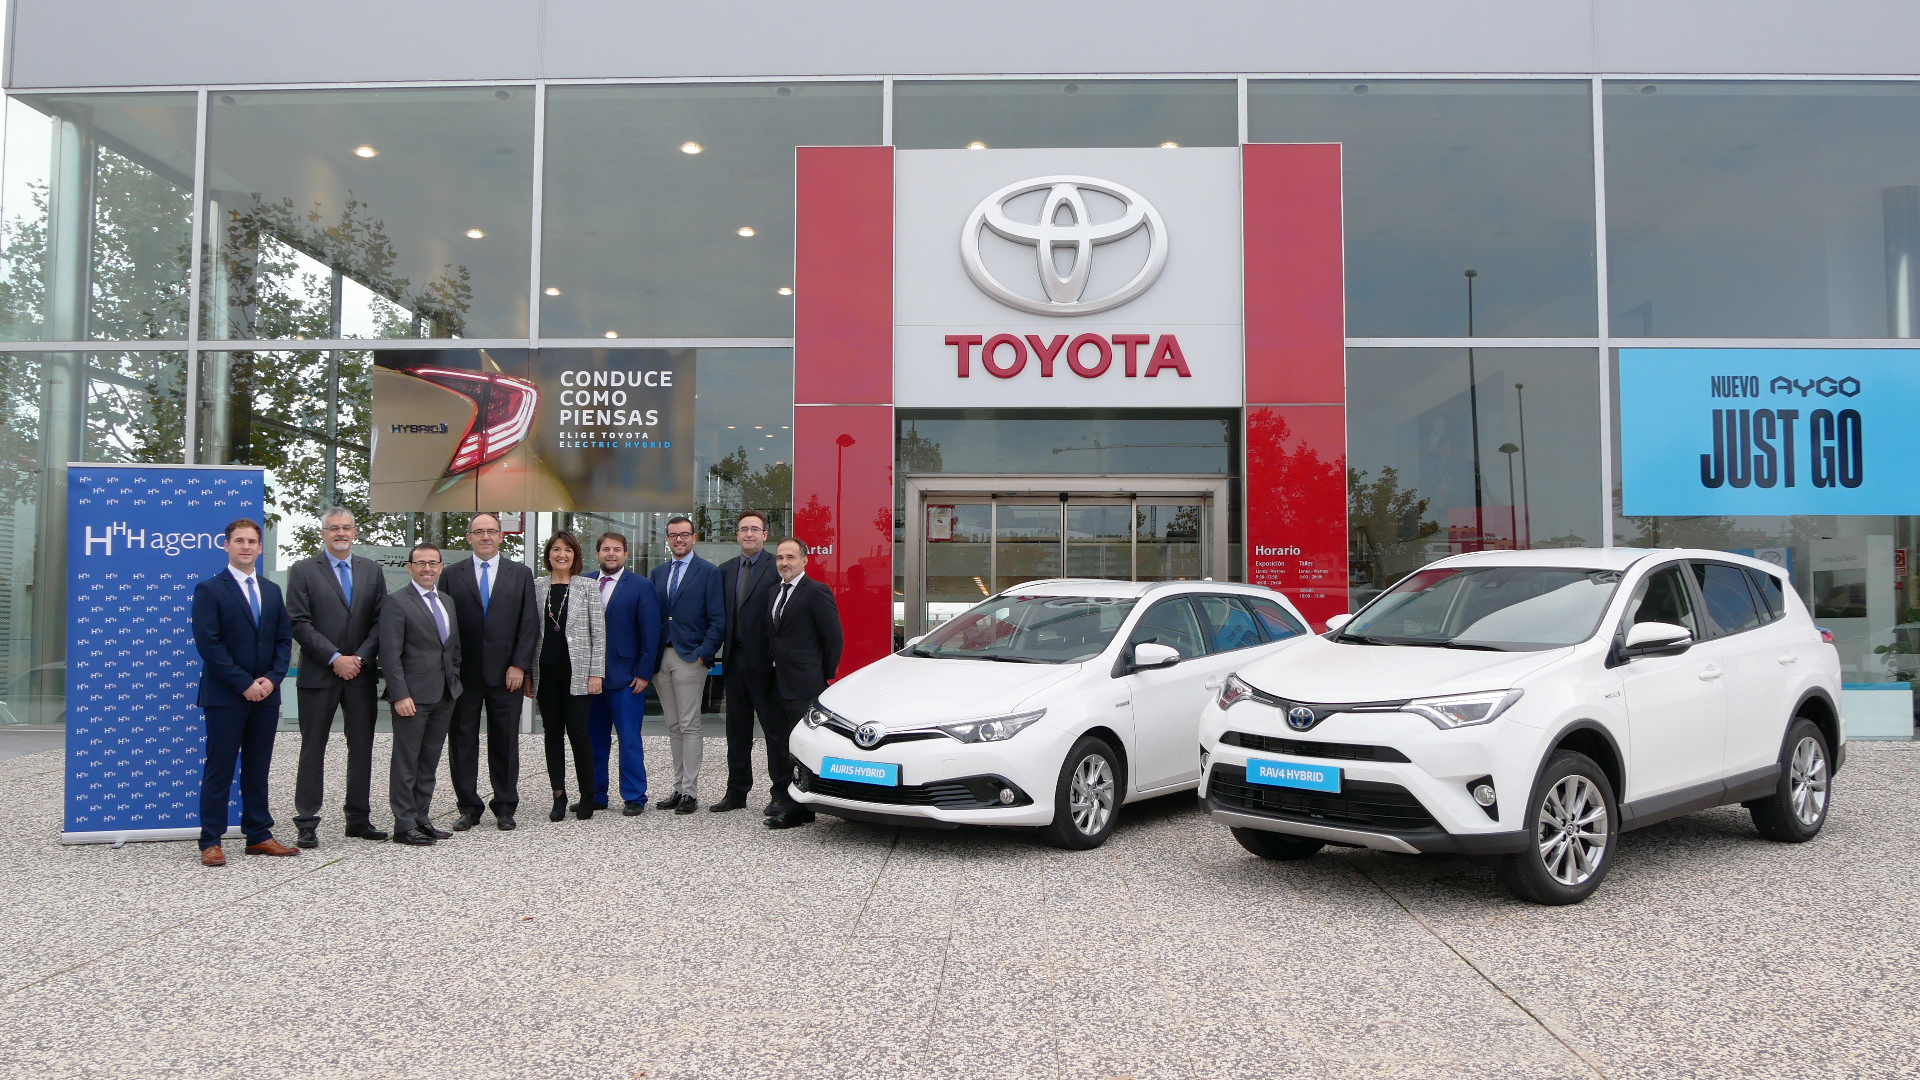 19 eléctricos de Toyota para Agenor